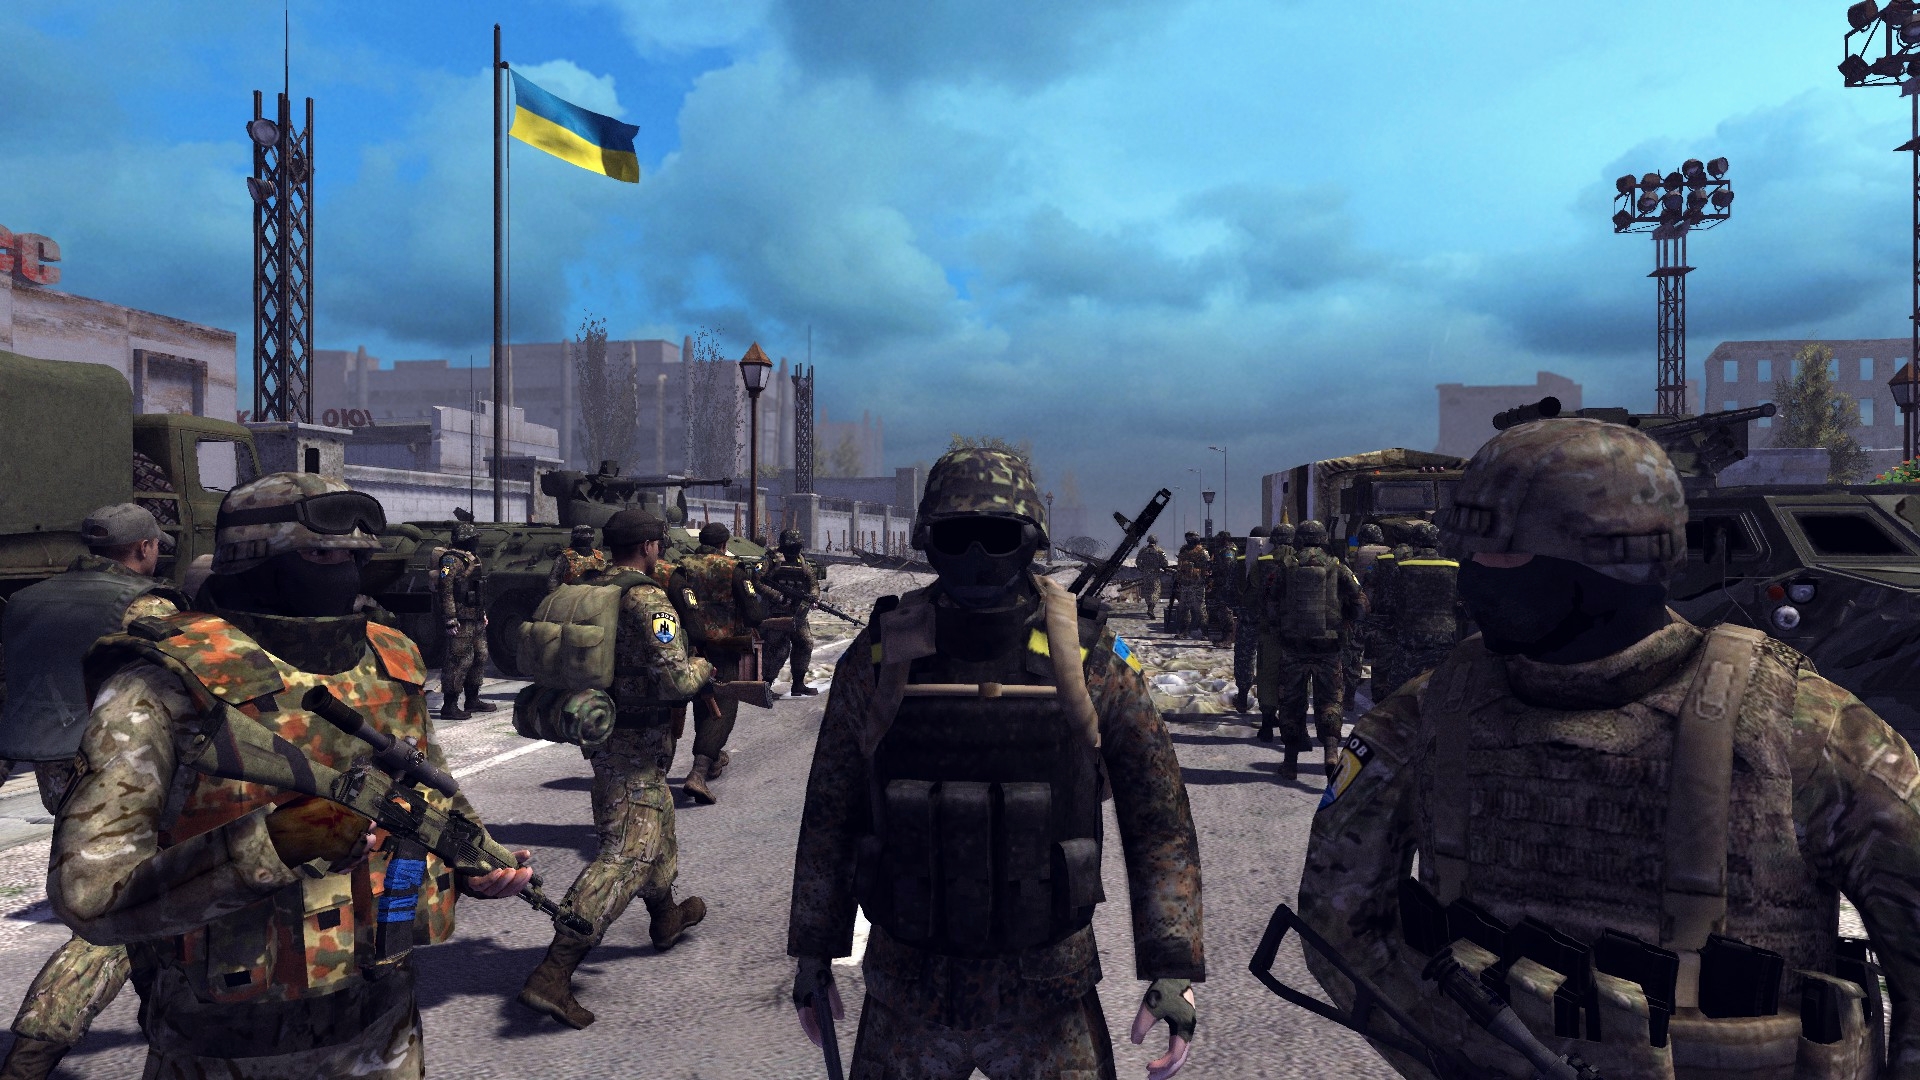 Игры про украину на андроид